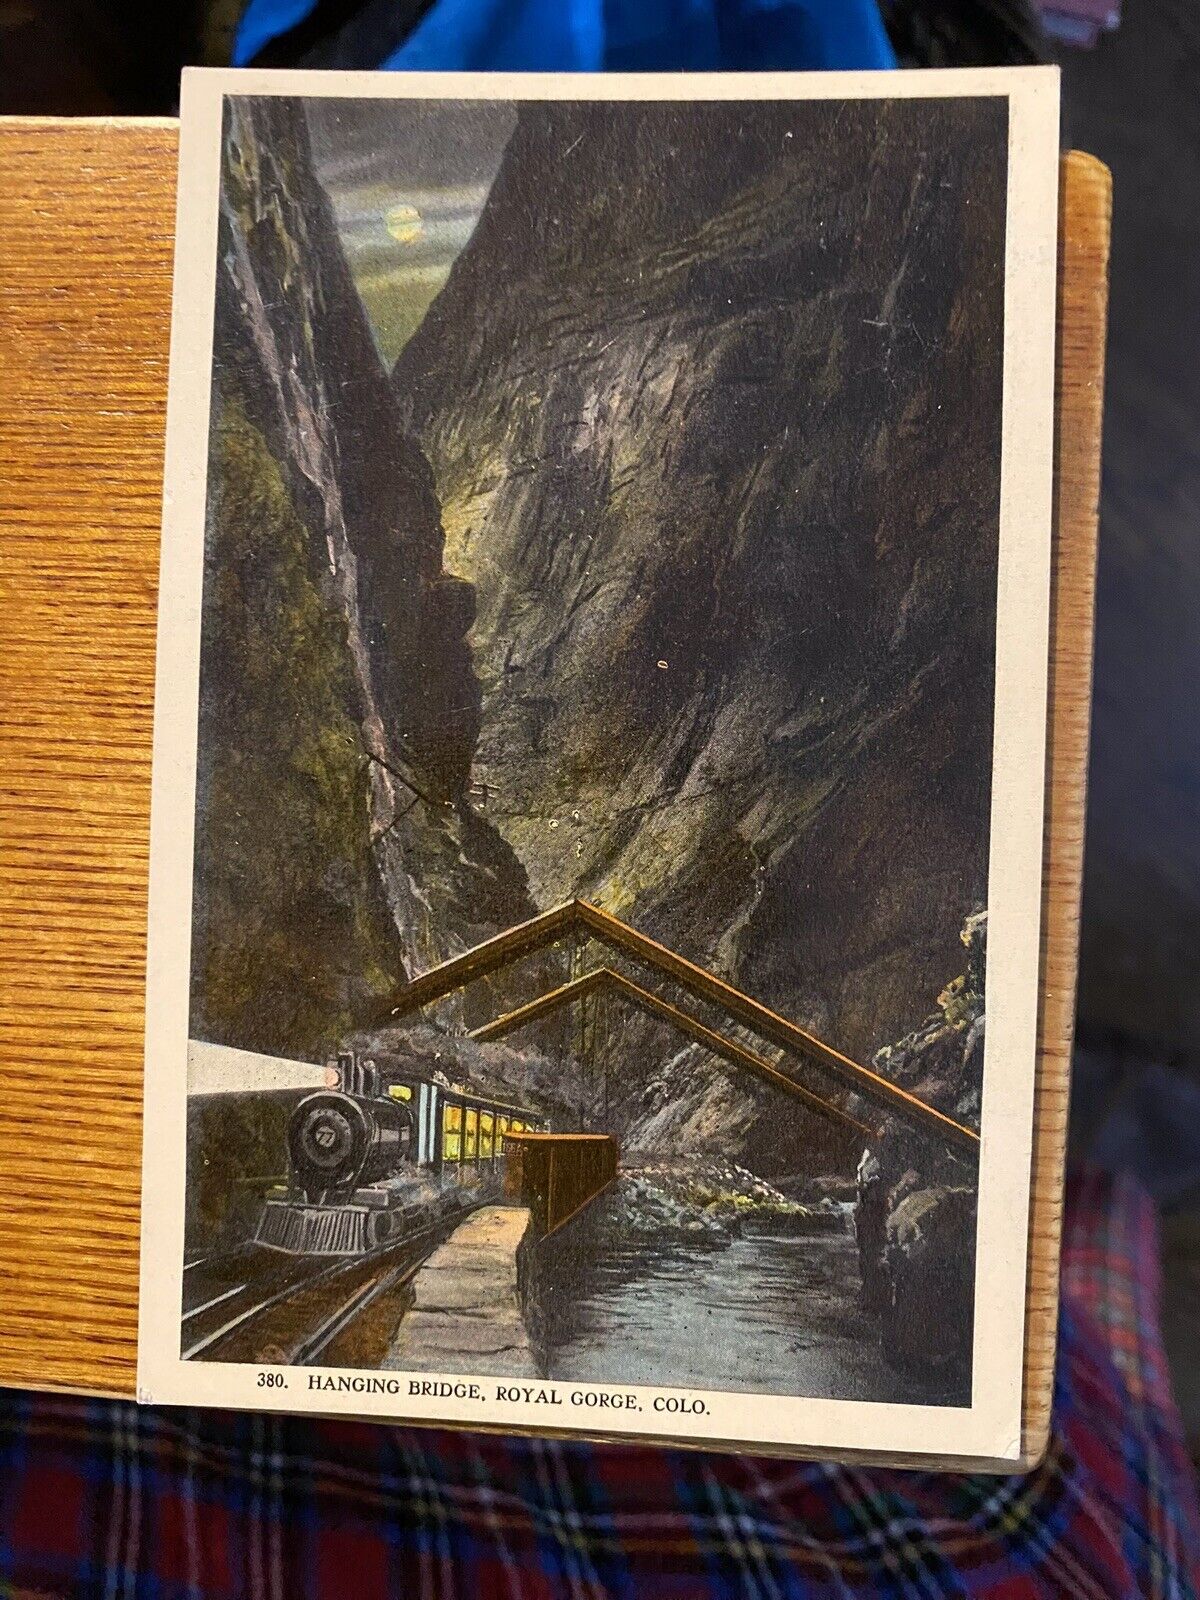 Hinging Bridge at Night, Royal Gorge, Colo.  Postcard